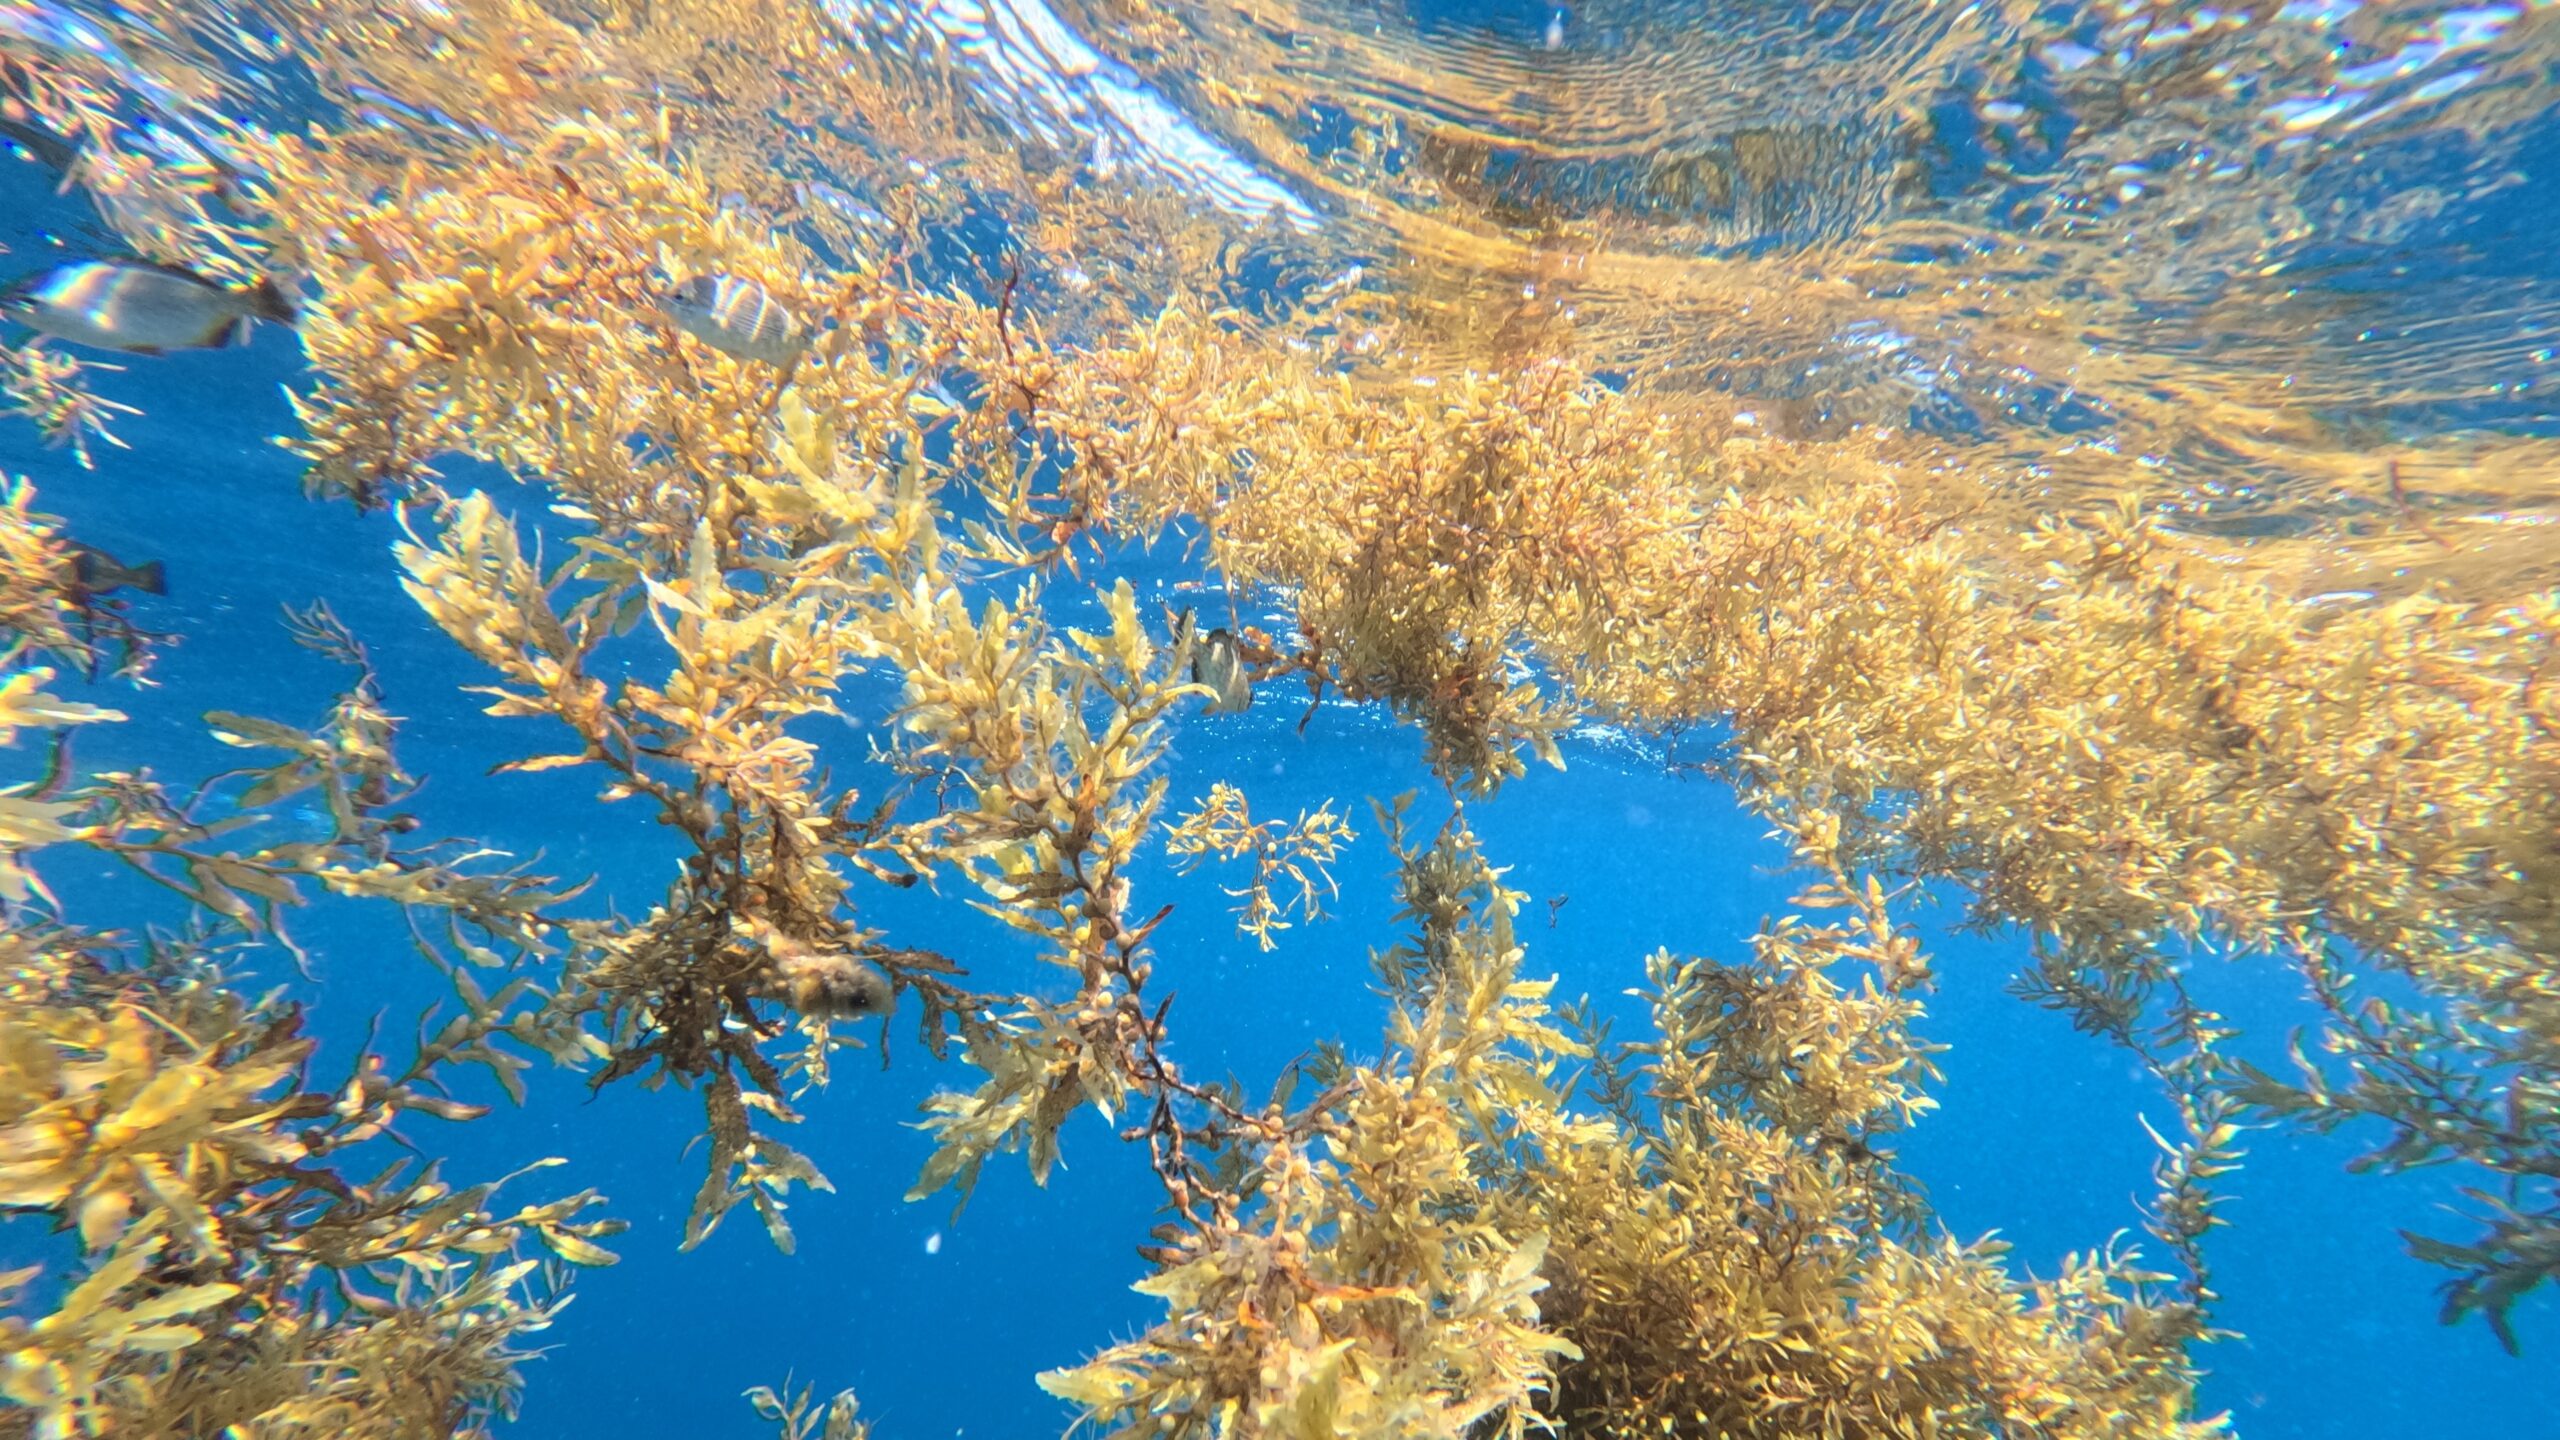 Seaweed in the ocean.